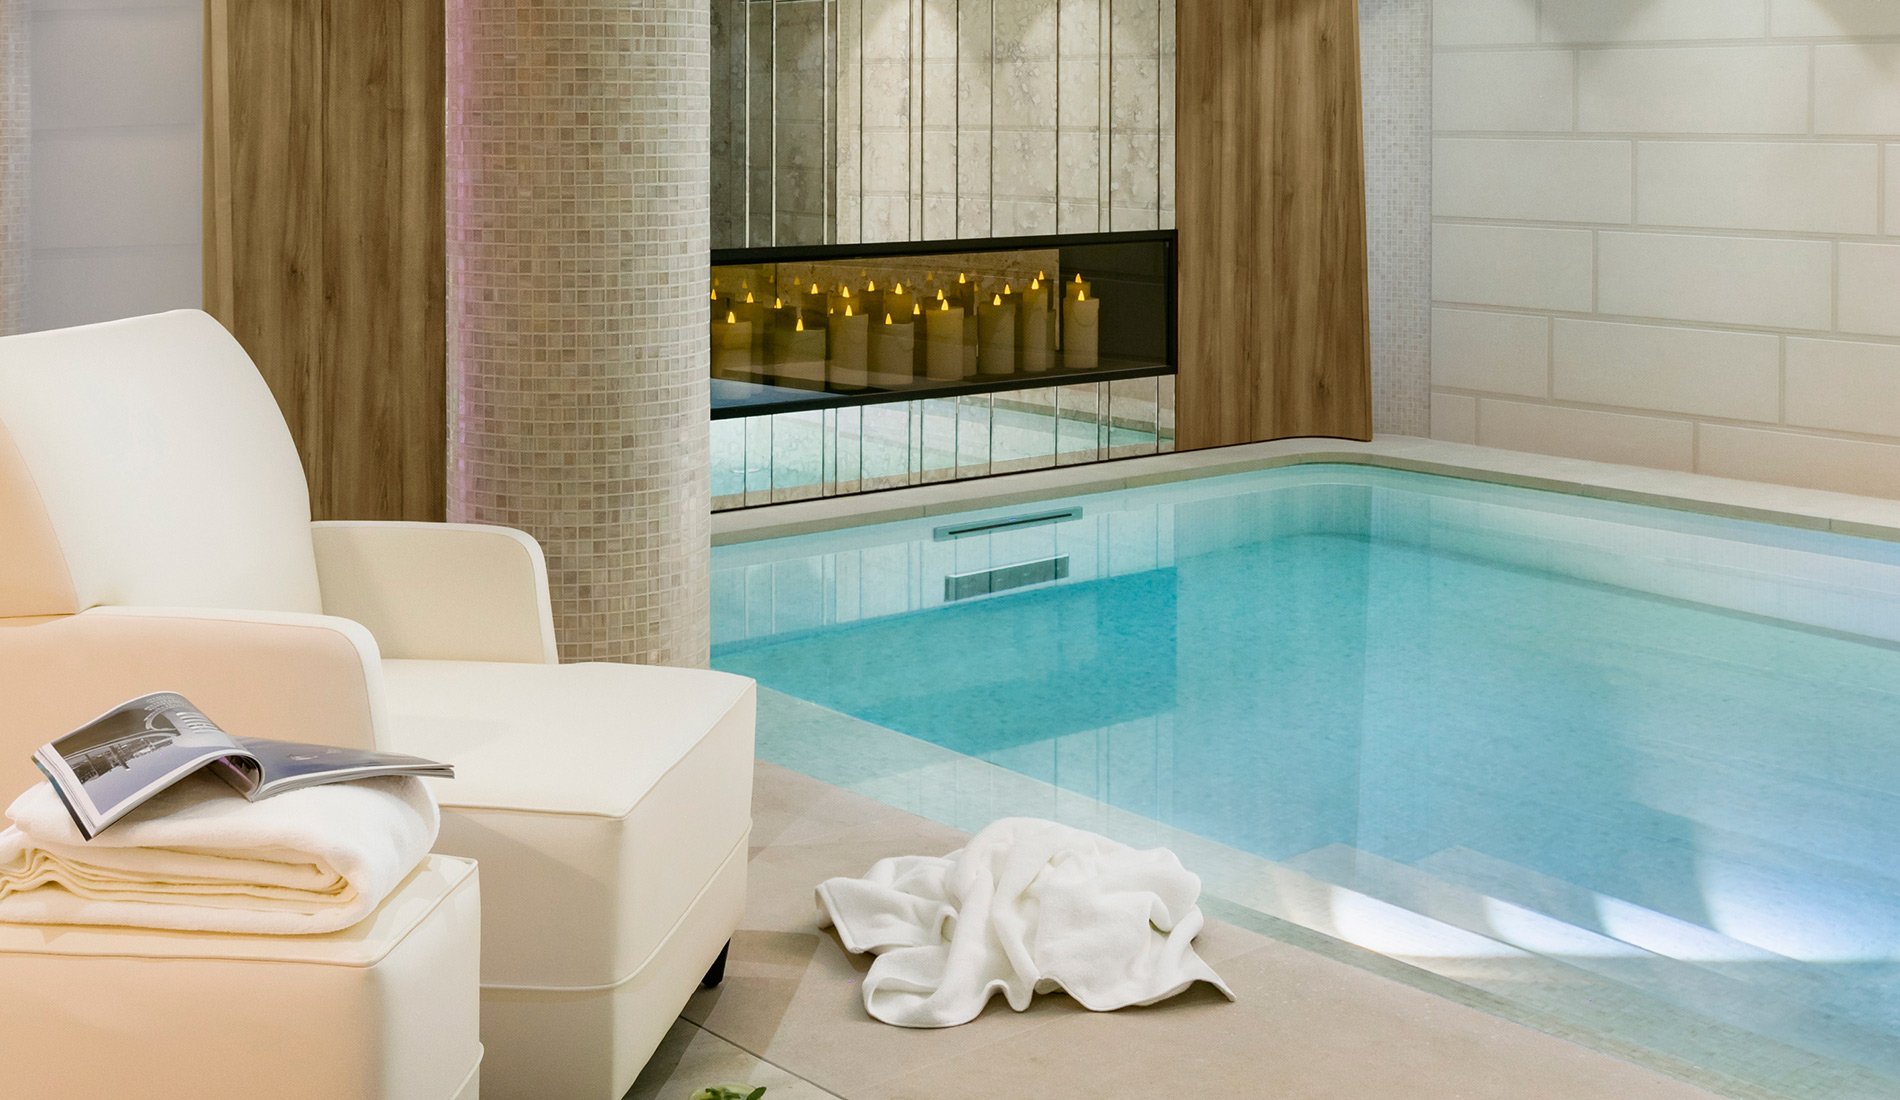 Hôtel de luxe - Maison Albar Hotels Le Pont-Neuf - 5 étoiles - piscine intérieure